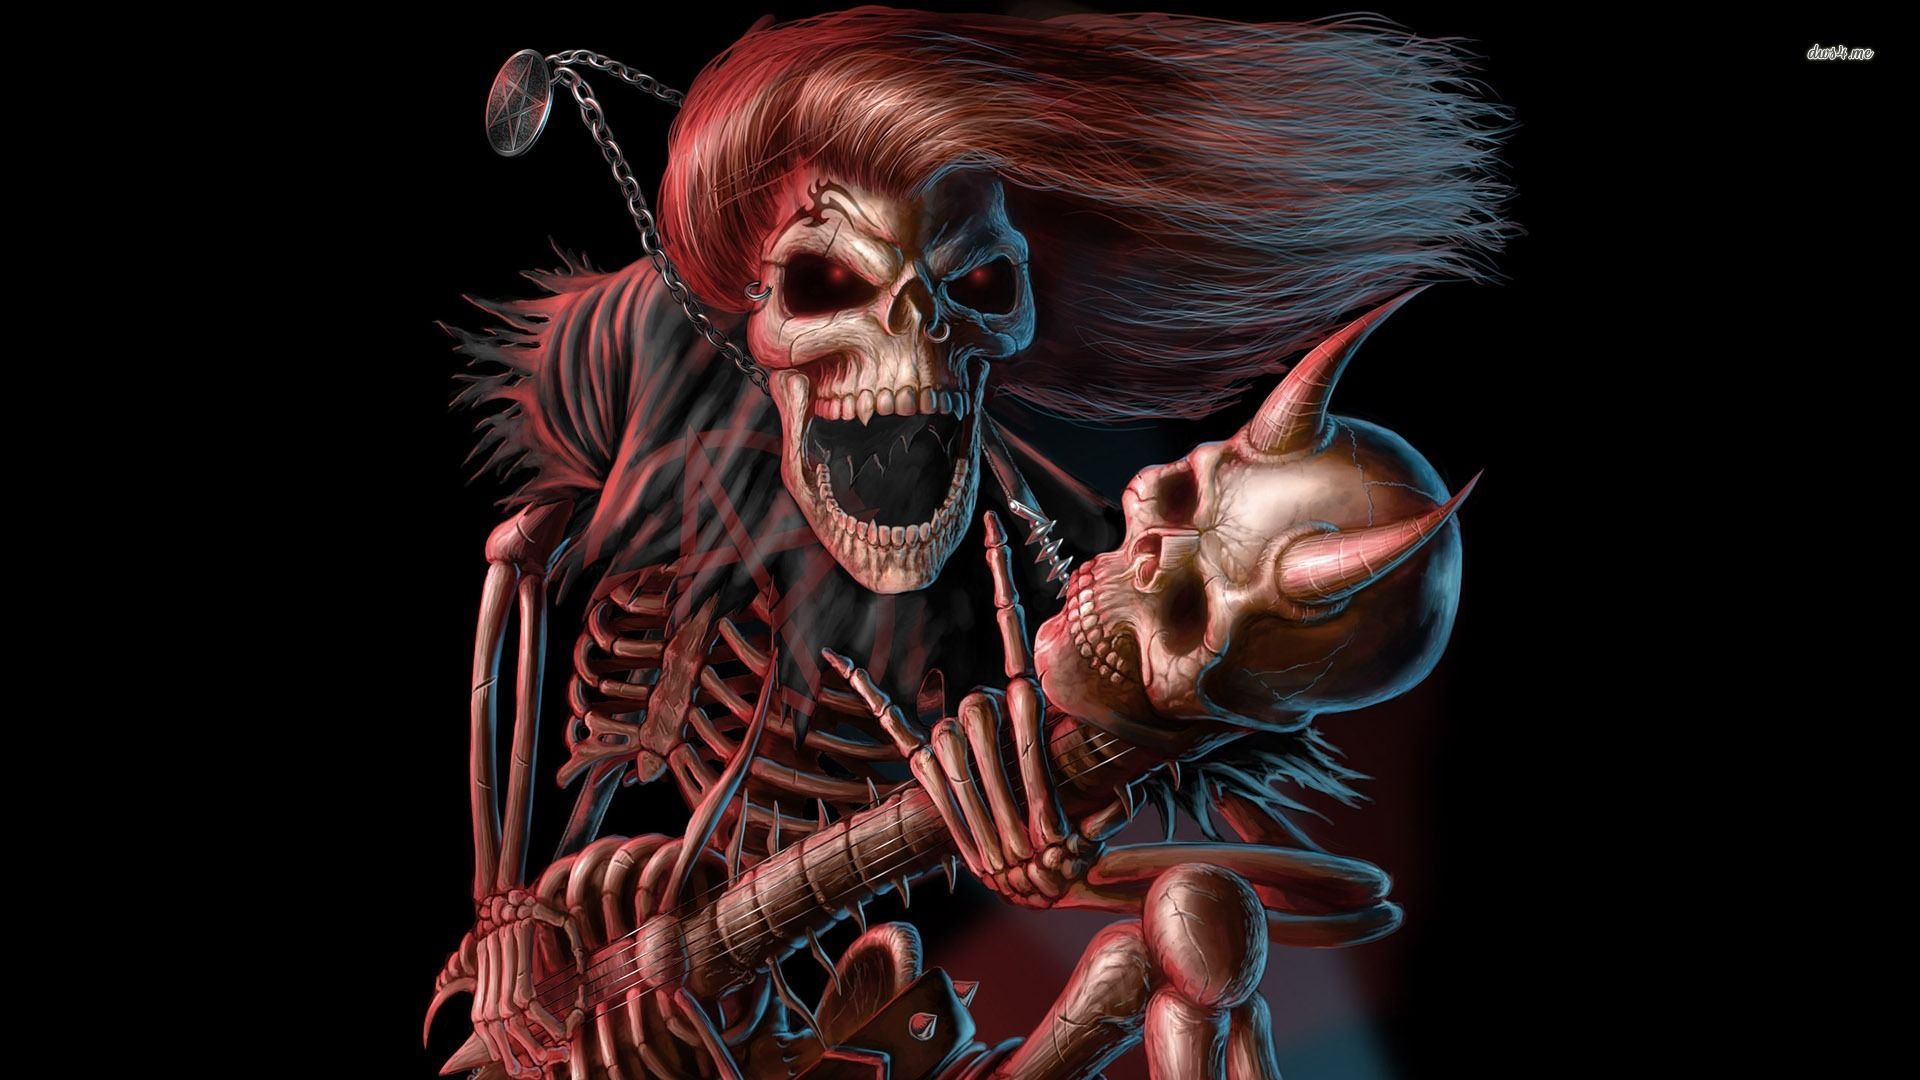 Skeleton playing guitar wallpaper - Fantasy wallpapers - #3021